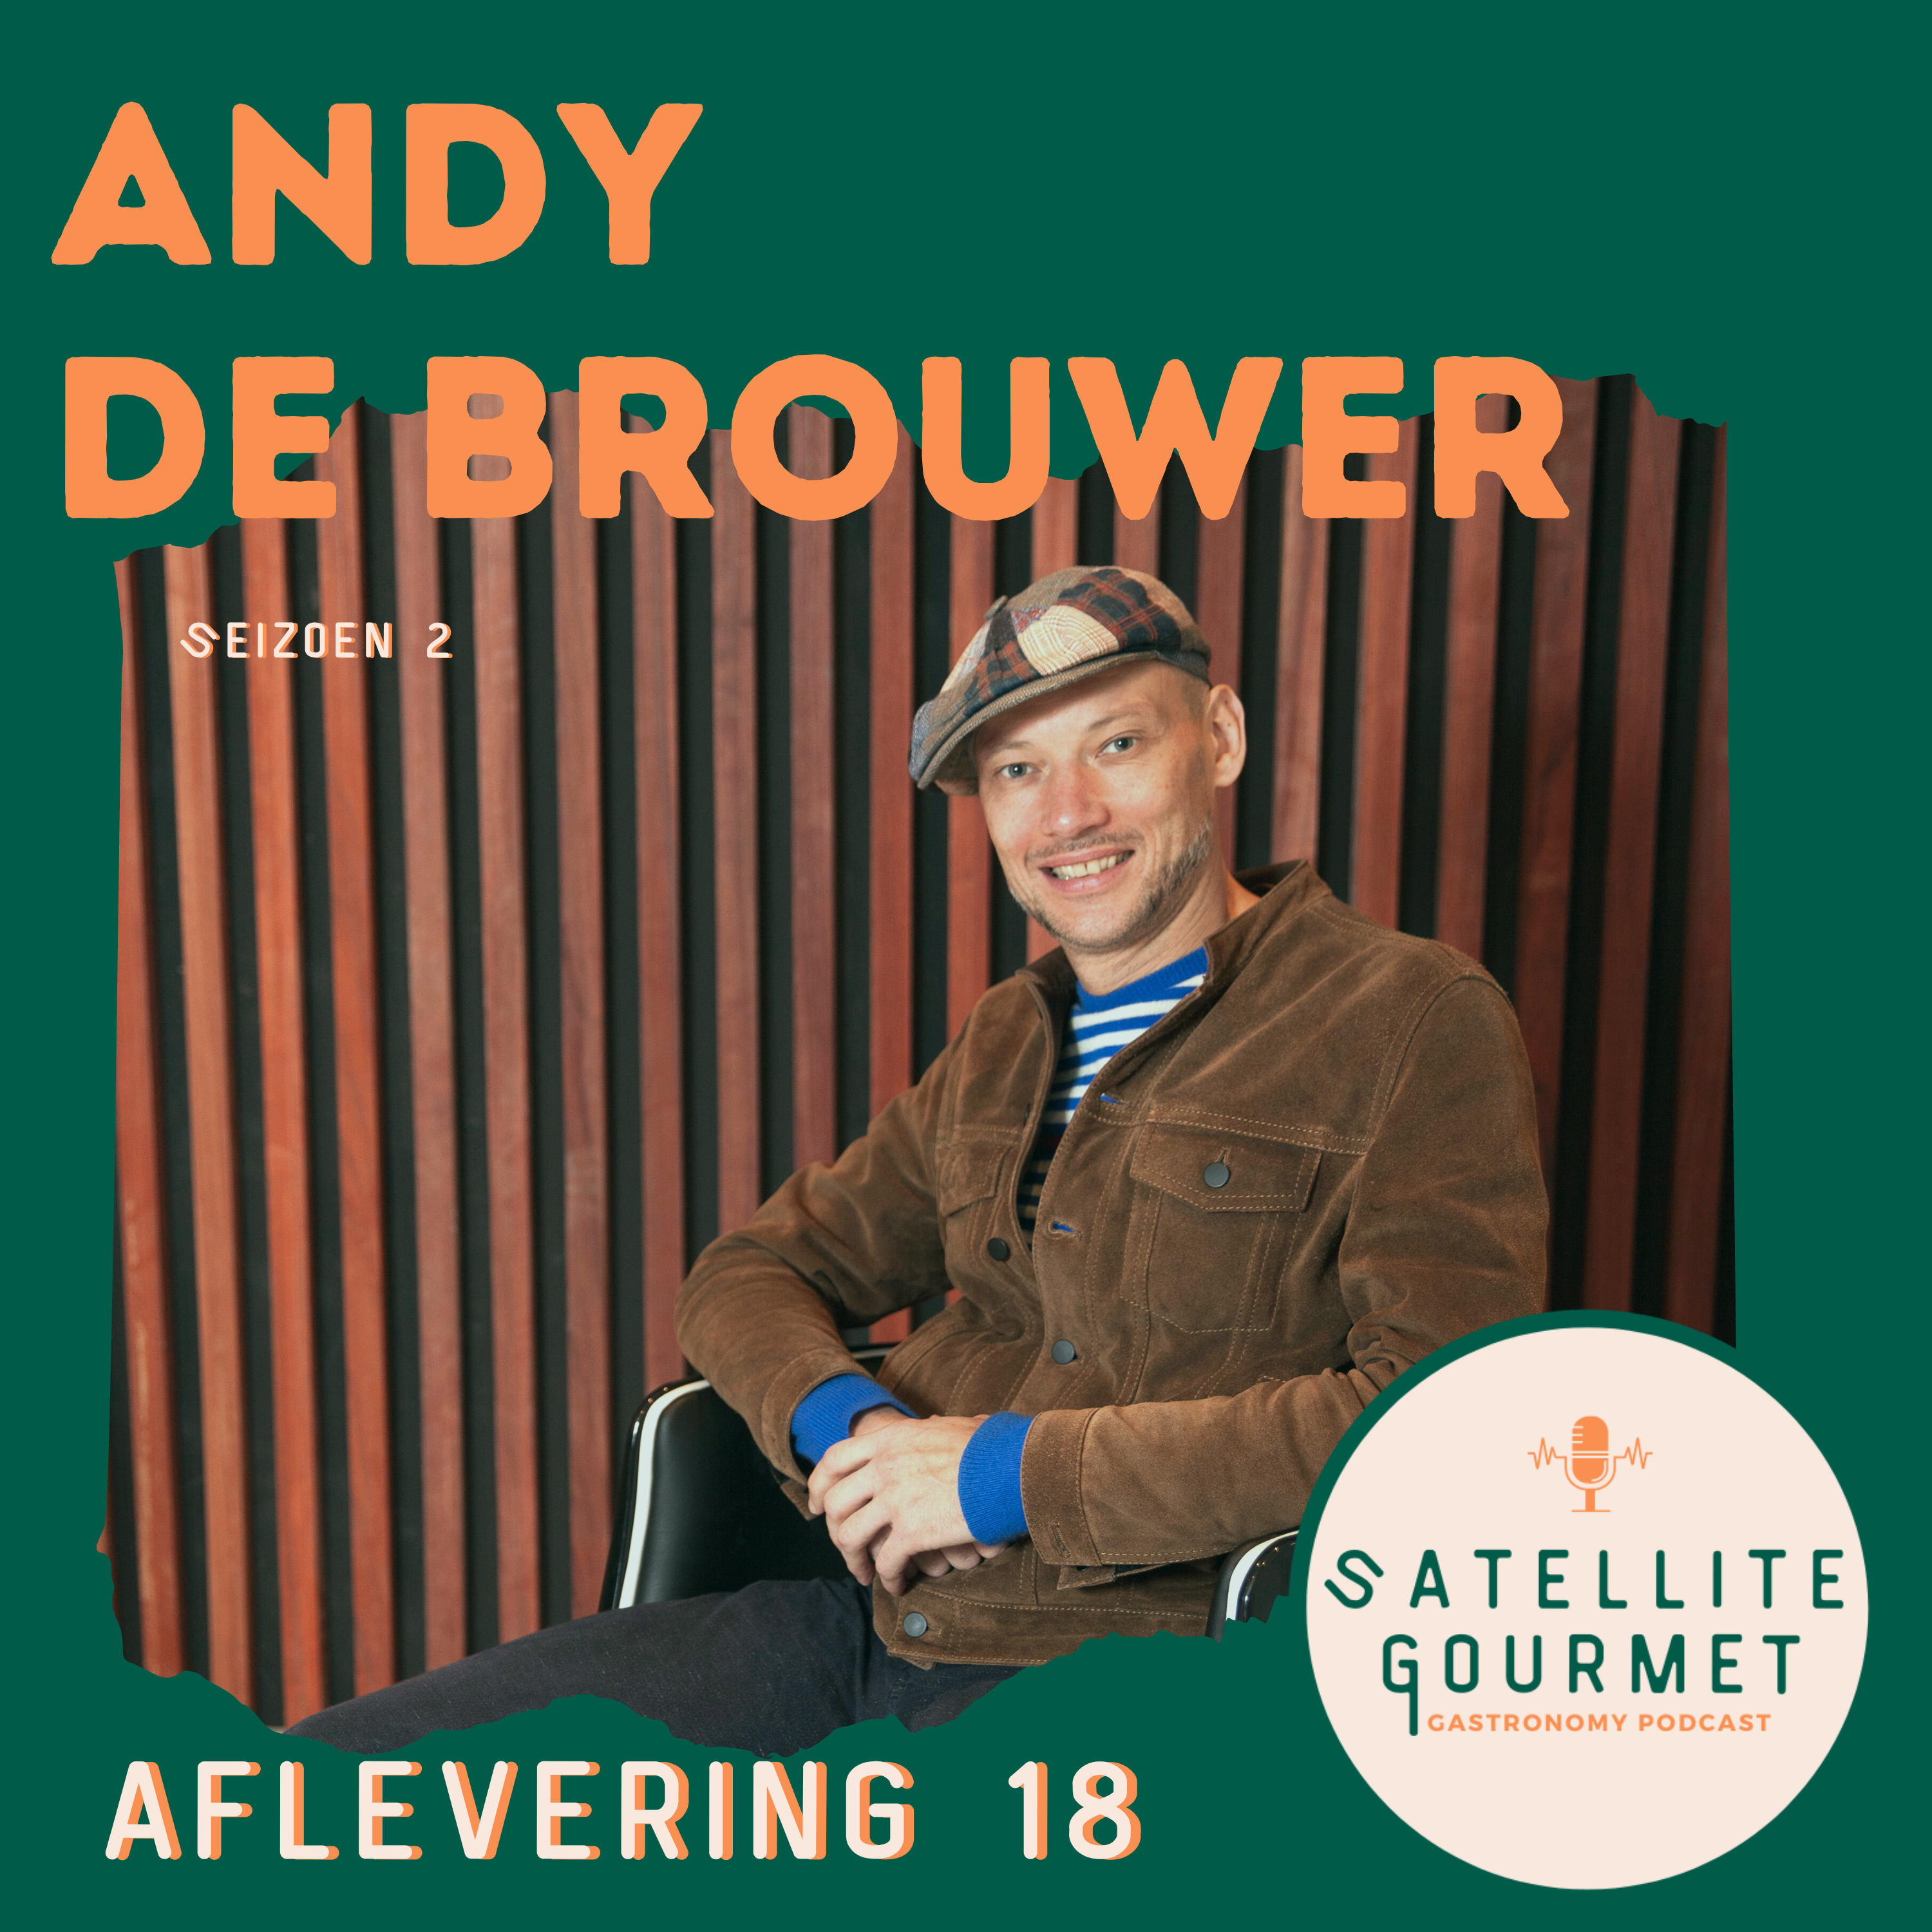 Andy De Brouwer